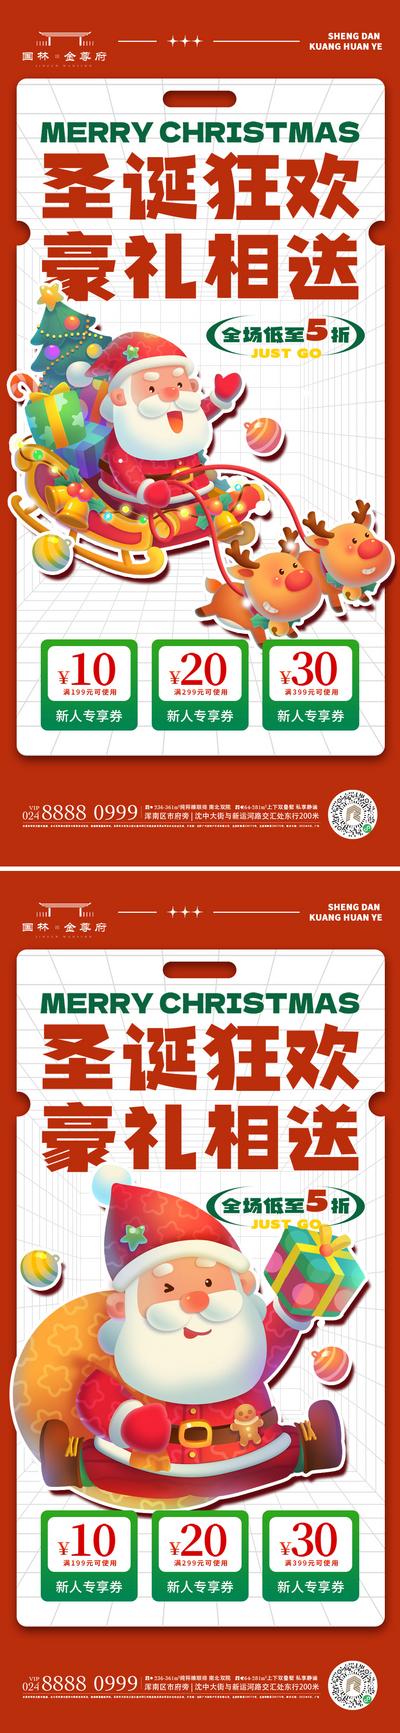 南门网 广告 海报 节日 圣诞节 圣诞老人 圣诞树 礼物 圣诞狂欢 圣诞礼物 盲盒 圣诞袜 平安夜 苹果 秒杀 打折 系列